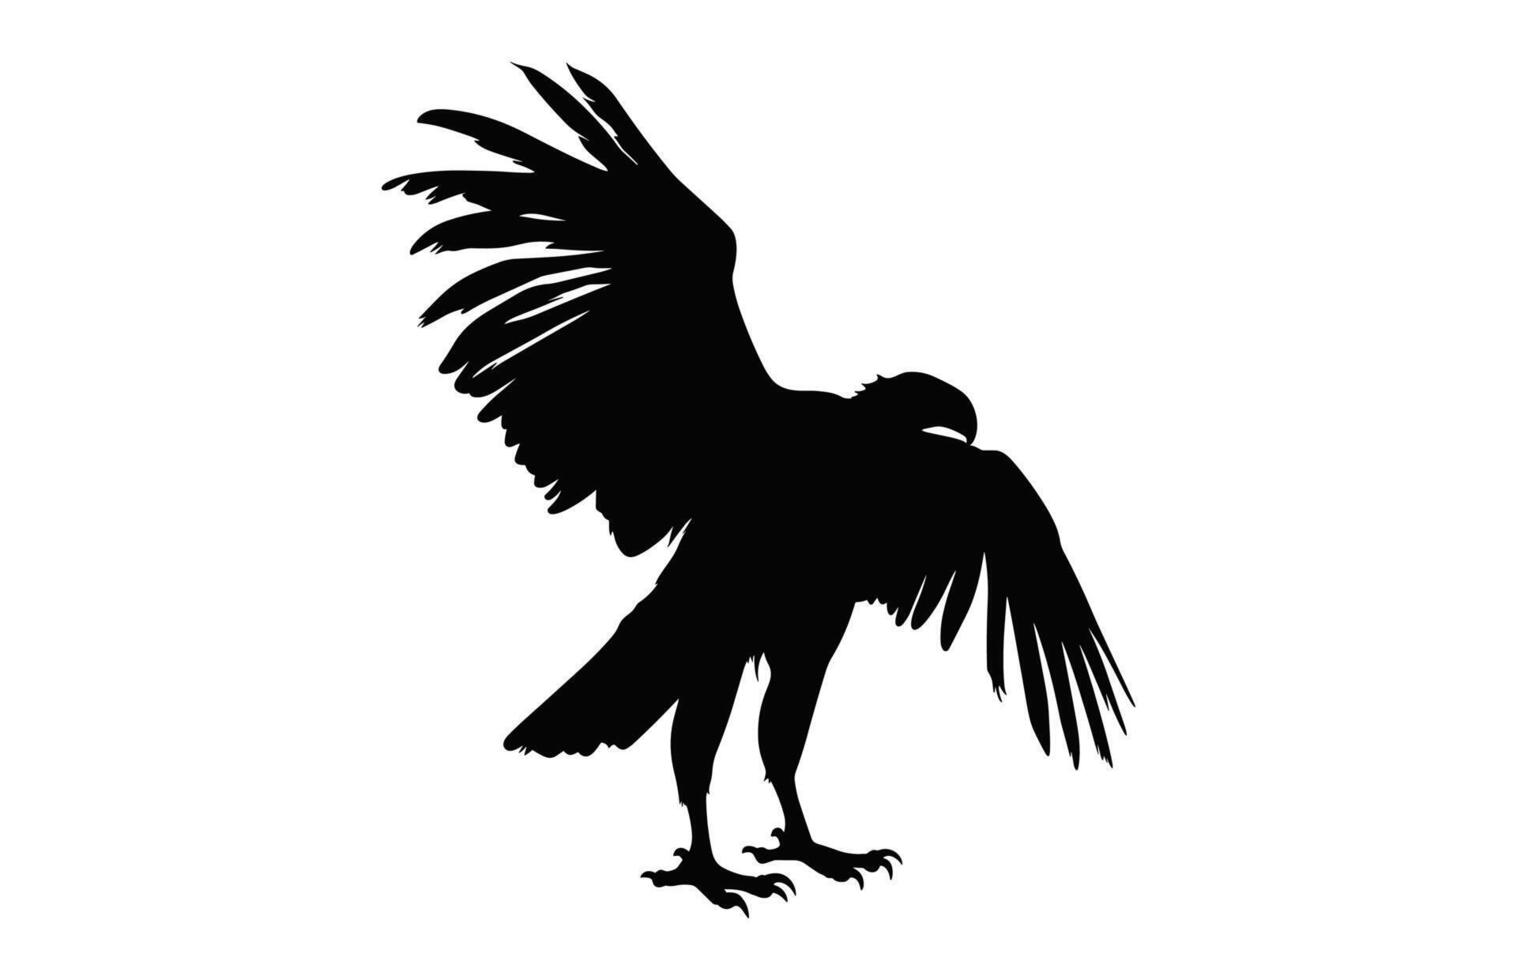 fliegend Griffon Geier Schnabel schwarz Vektor, groß Griffon Geier Silhouette isoliert auf ein Weiß Hintergrund vektor